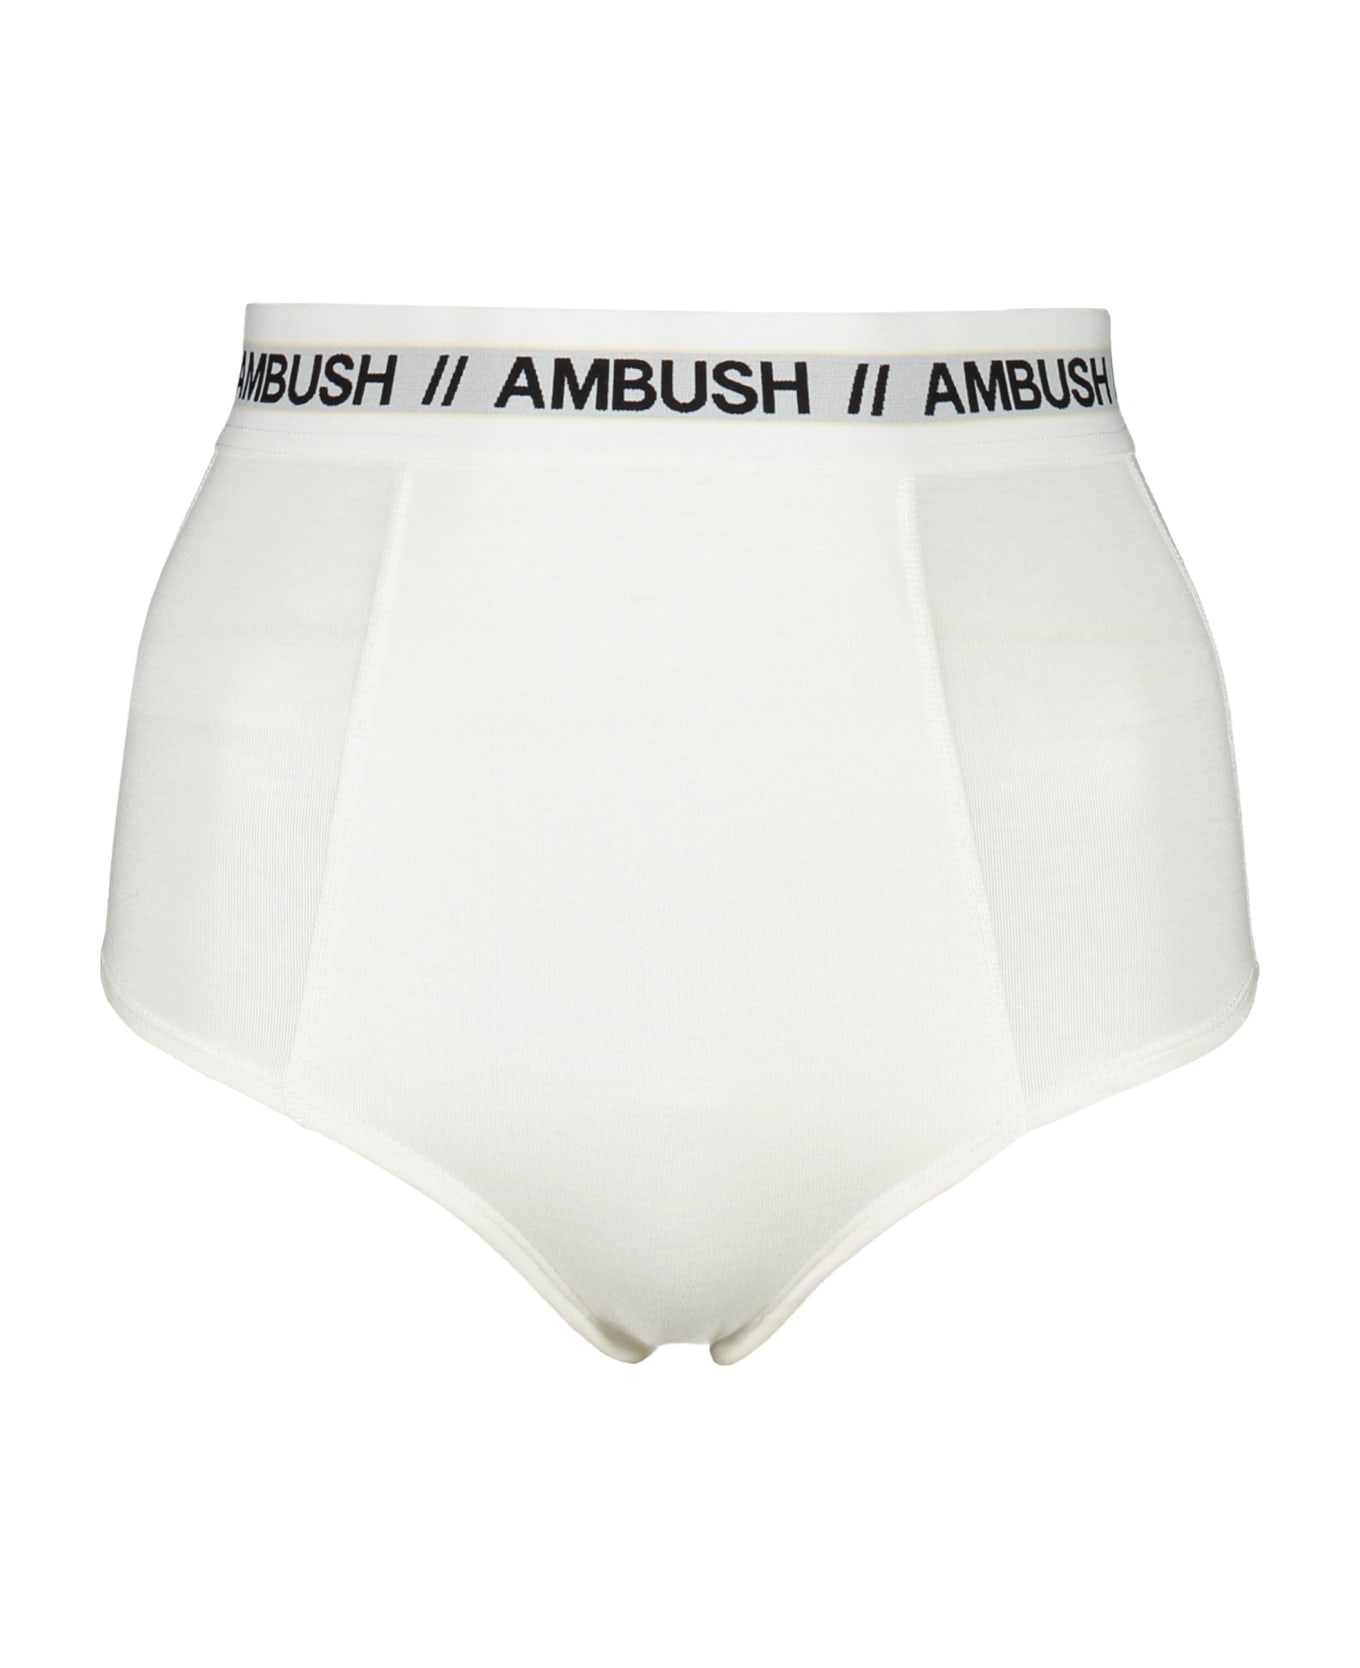 AMBUSH Plain Color Briefs - White ショーツ